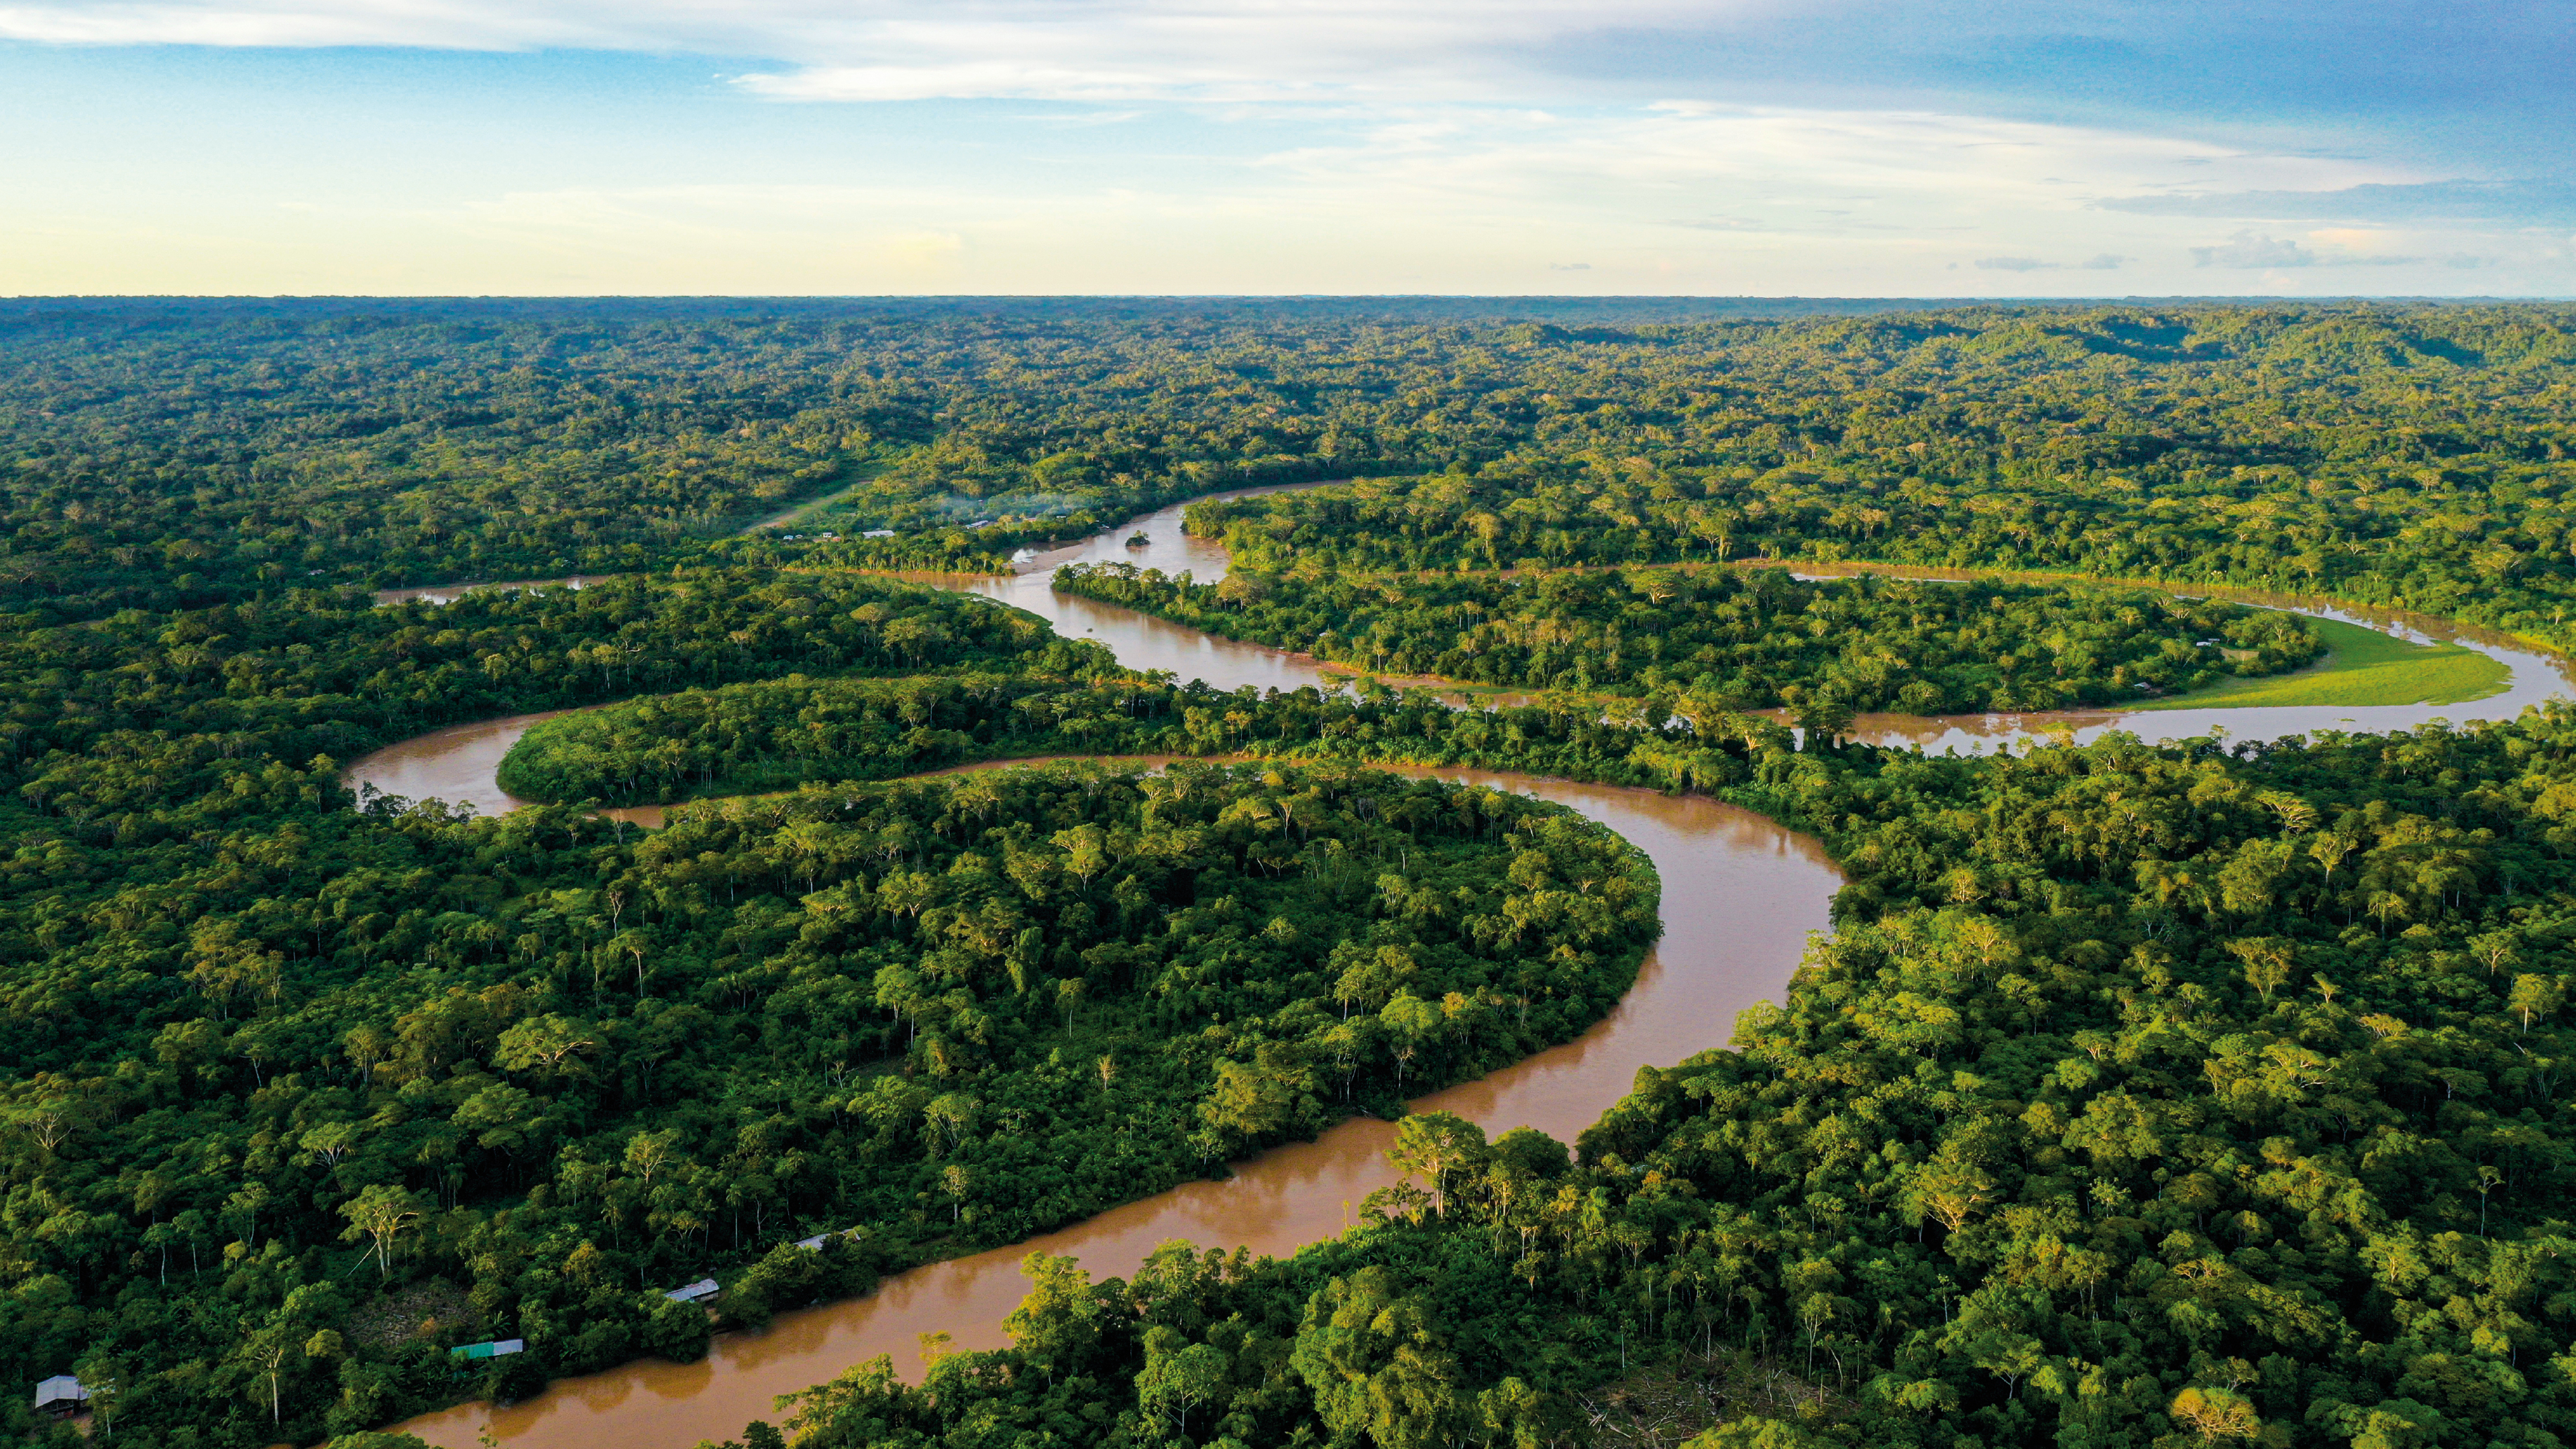 Futuro crítico para el Amazonas